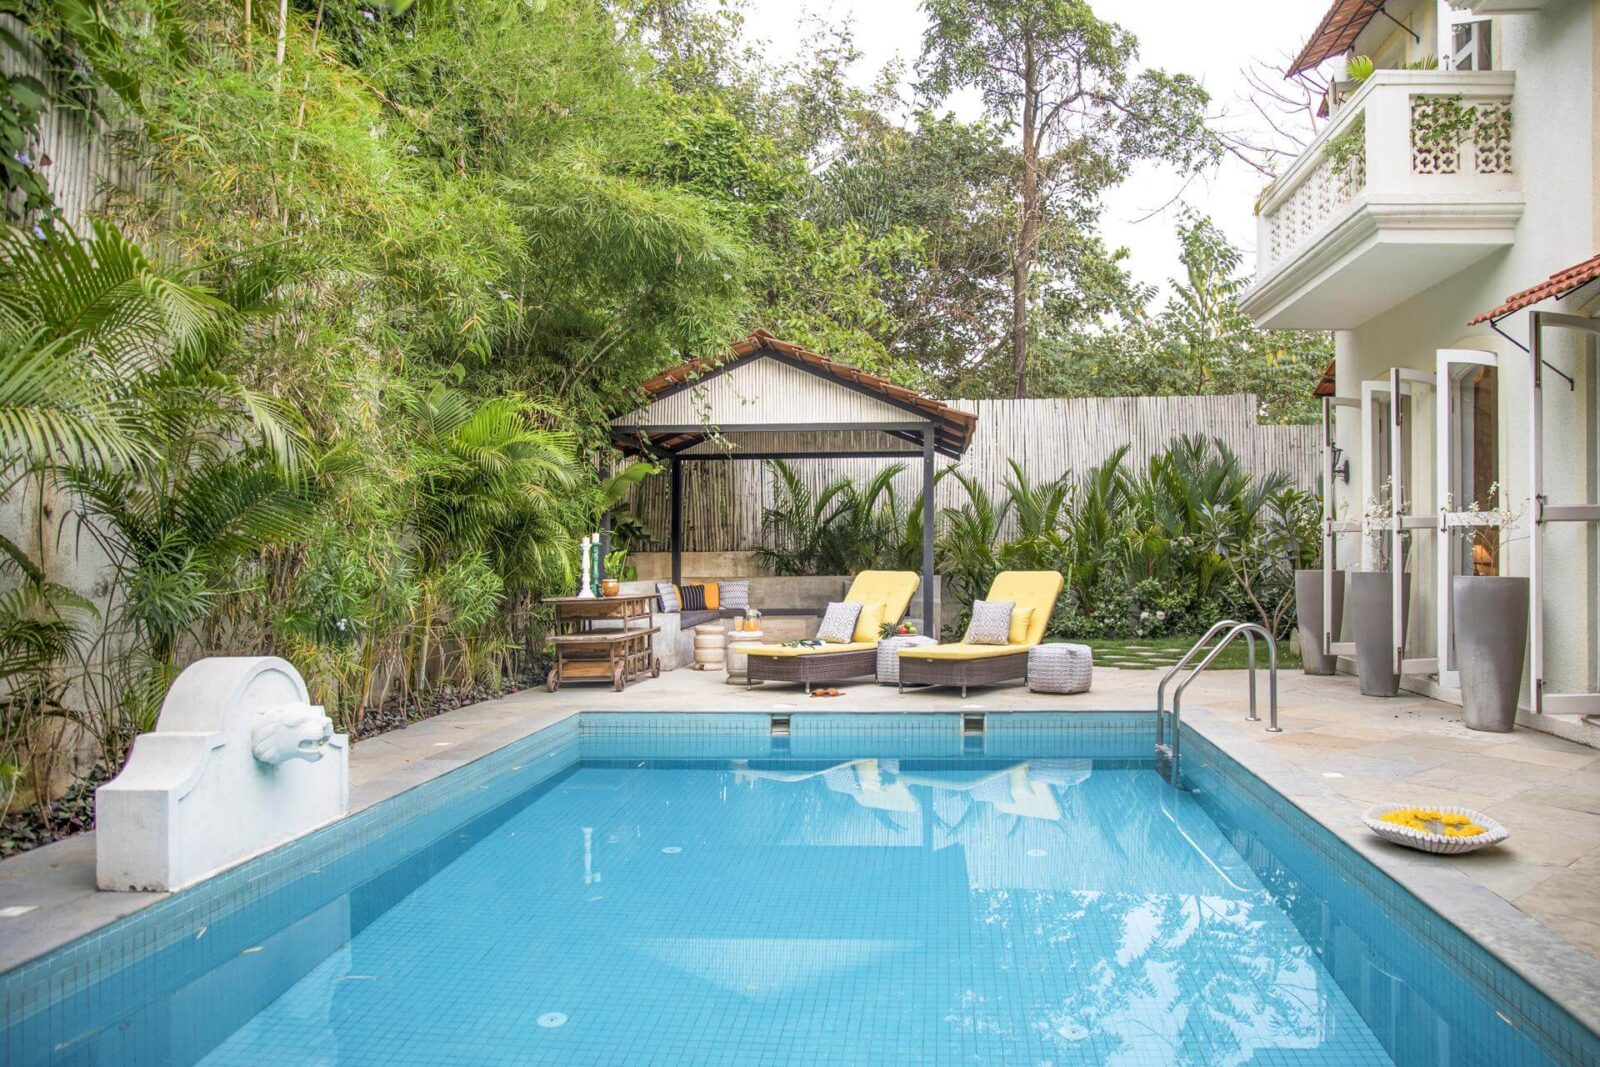 Fonteira Villa H - Premium Villas for Sale in Goa - Pool View